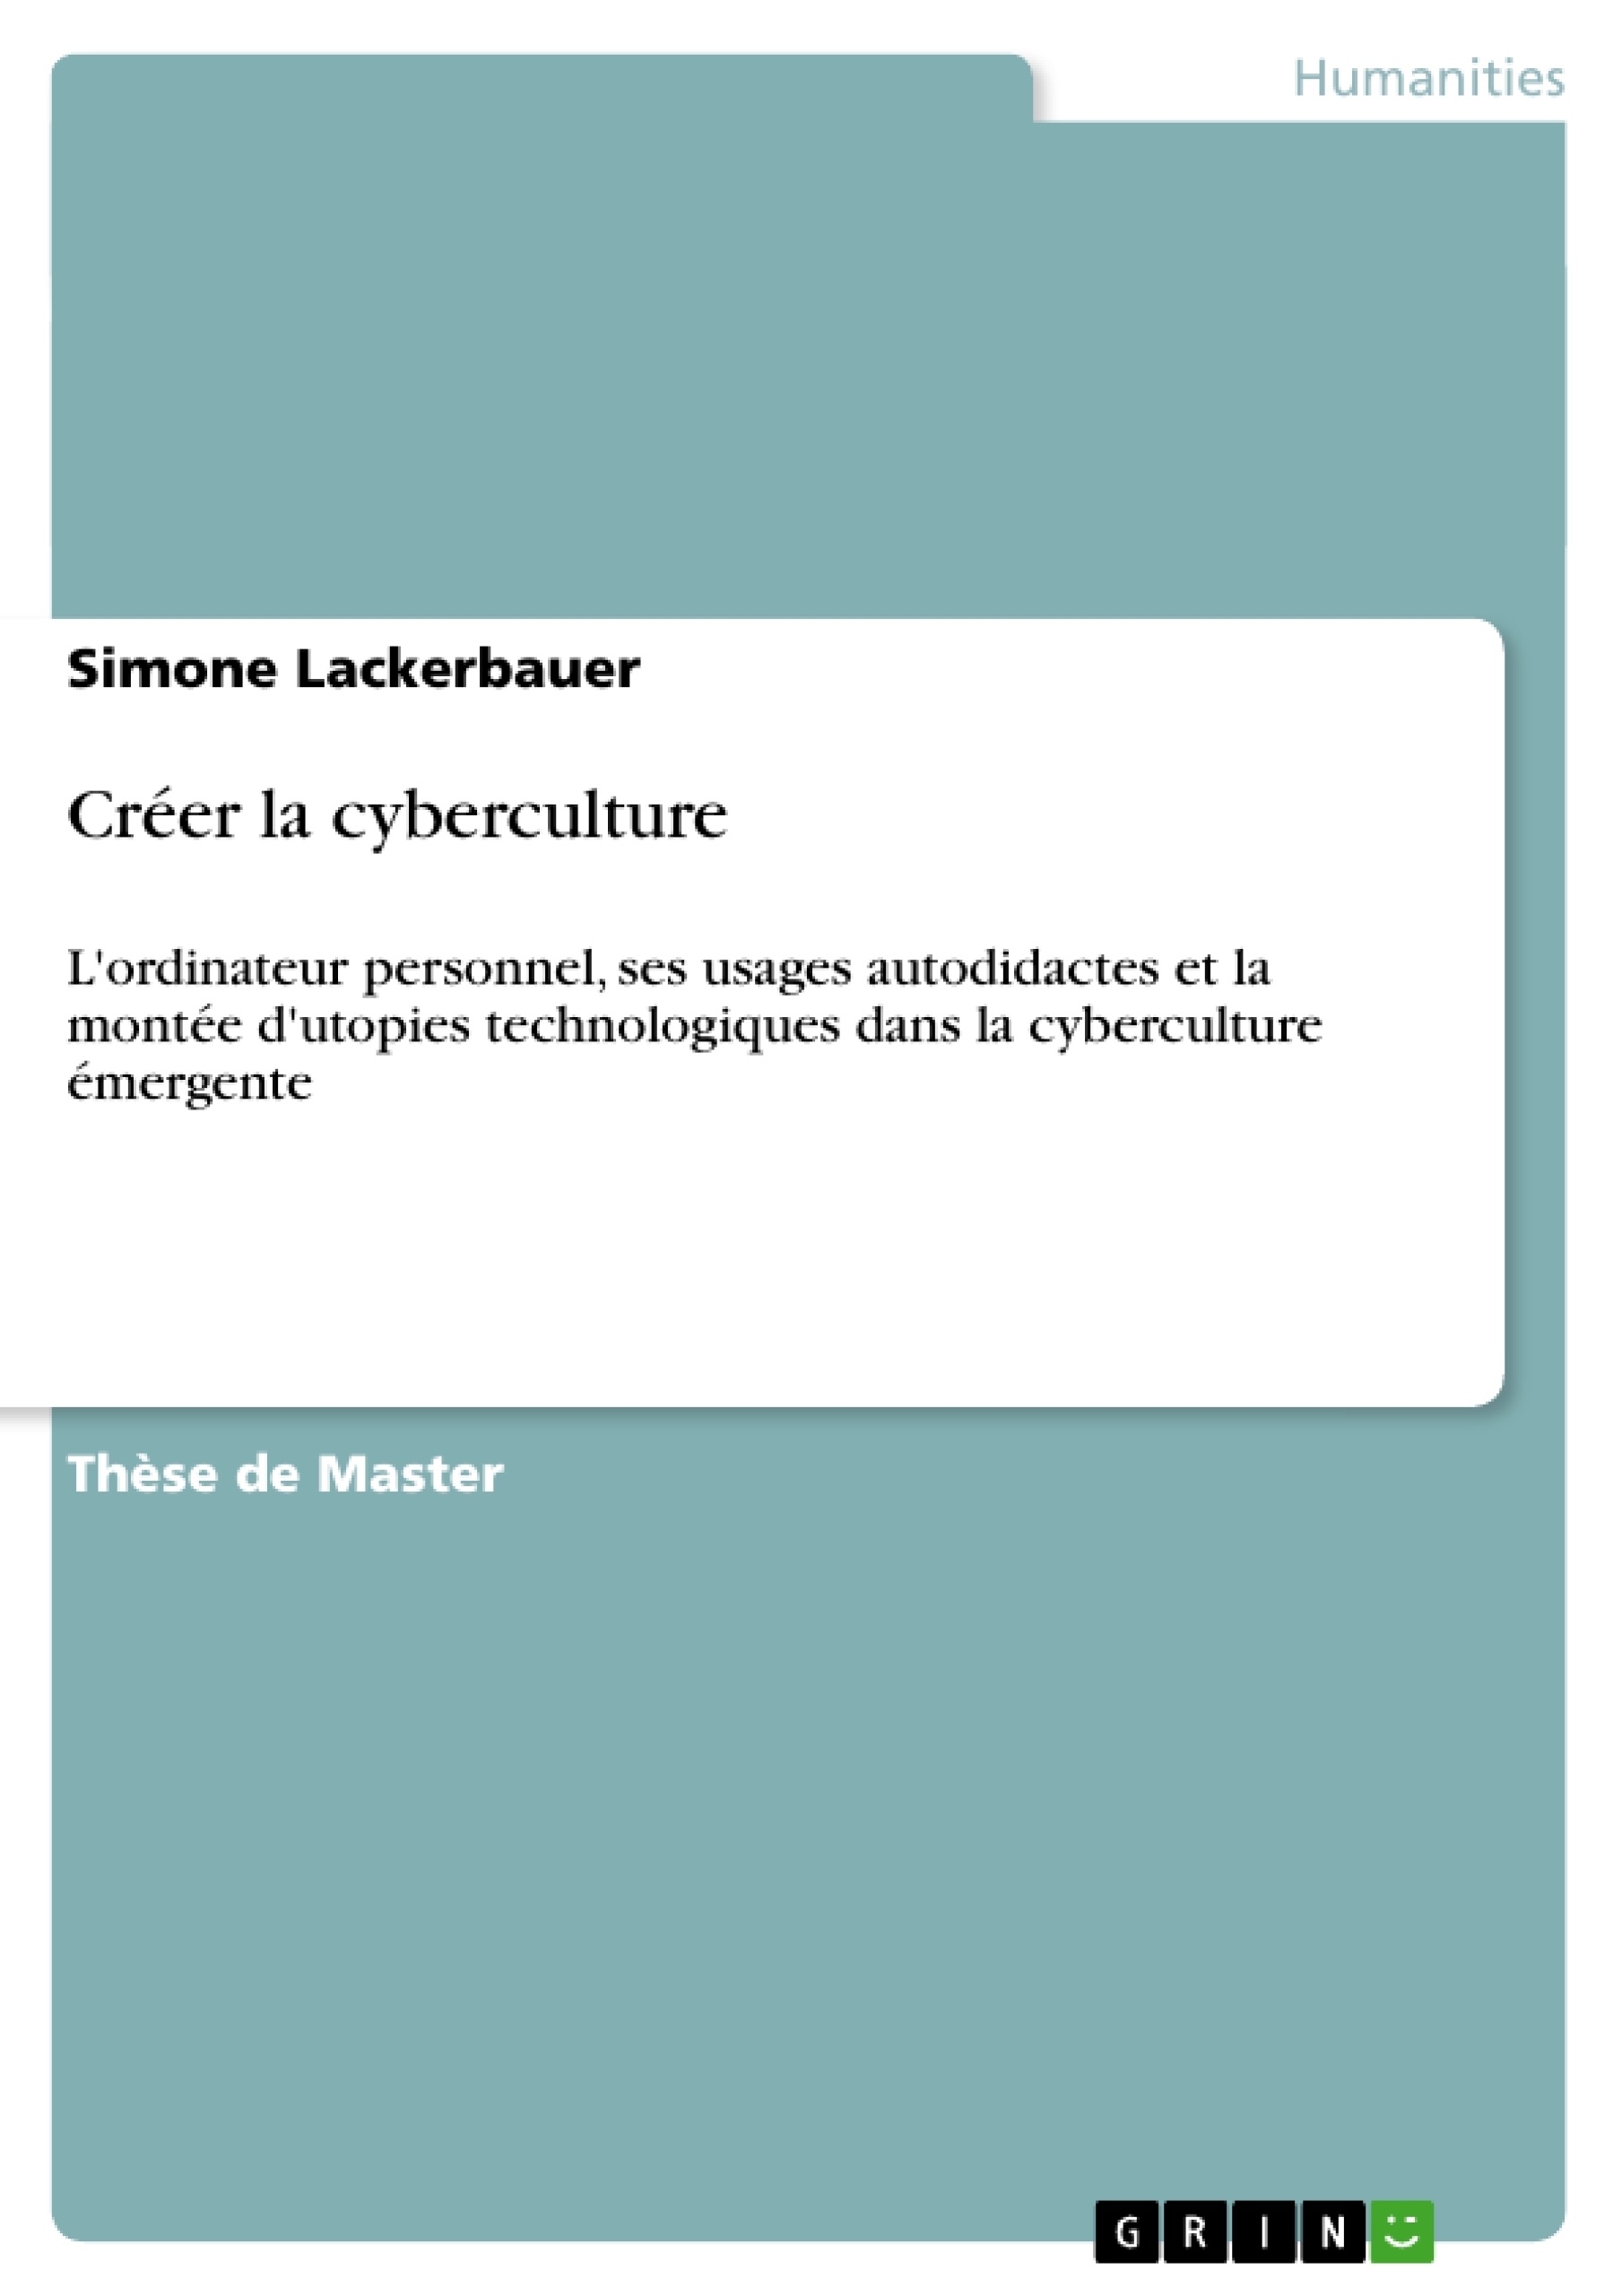 Título: Créer la cyberculture